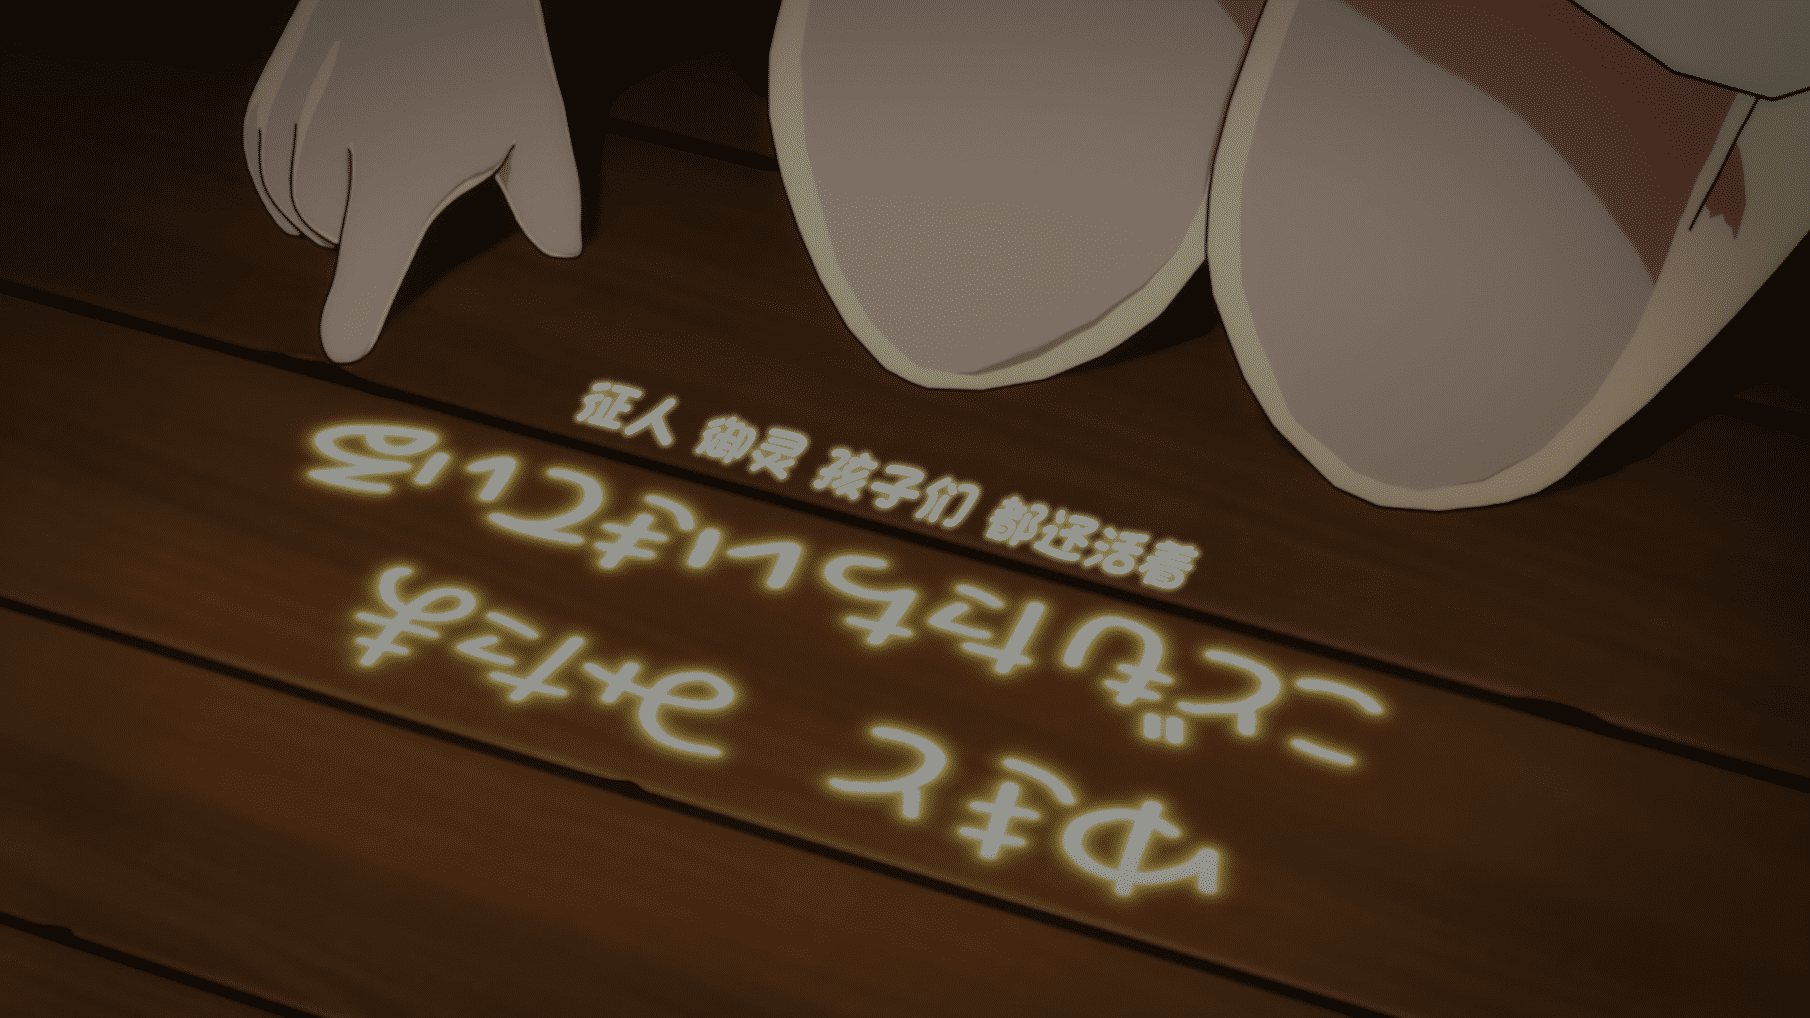 [猎户不鸽压制] 无神世界中的神明活动 Kaminaki Sekai no Kamisama Katsudou [11] [1080p] [简中内嵌] [2023年4月番]插图icecomic动漫-云之彼端,约定的地方(´･ᴗ･`)1